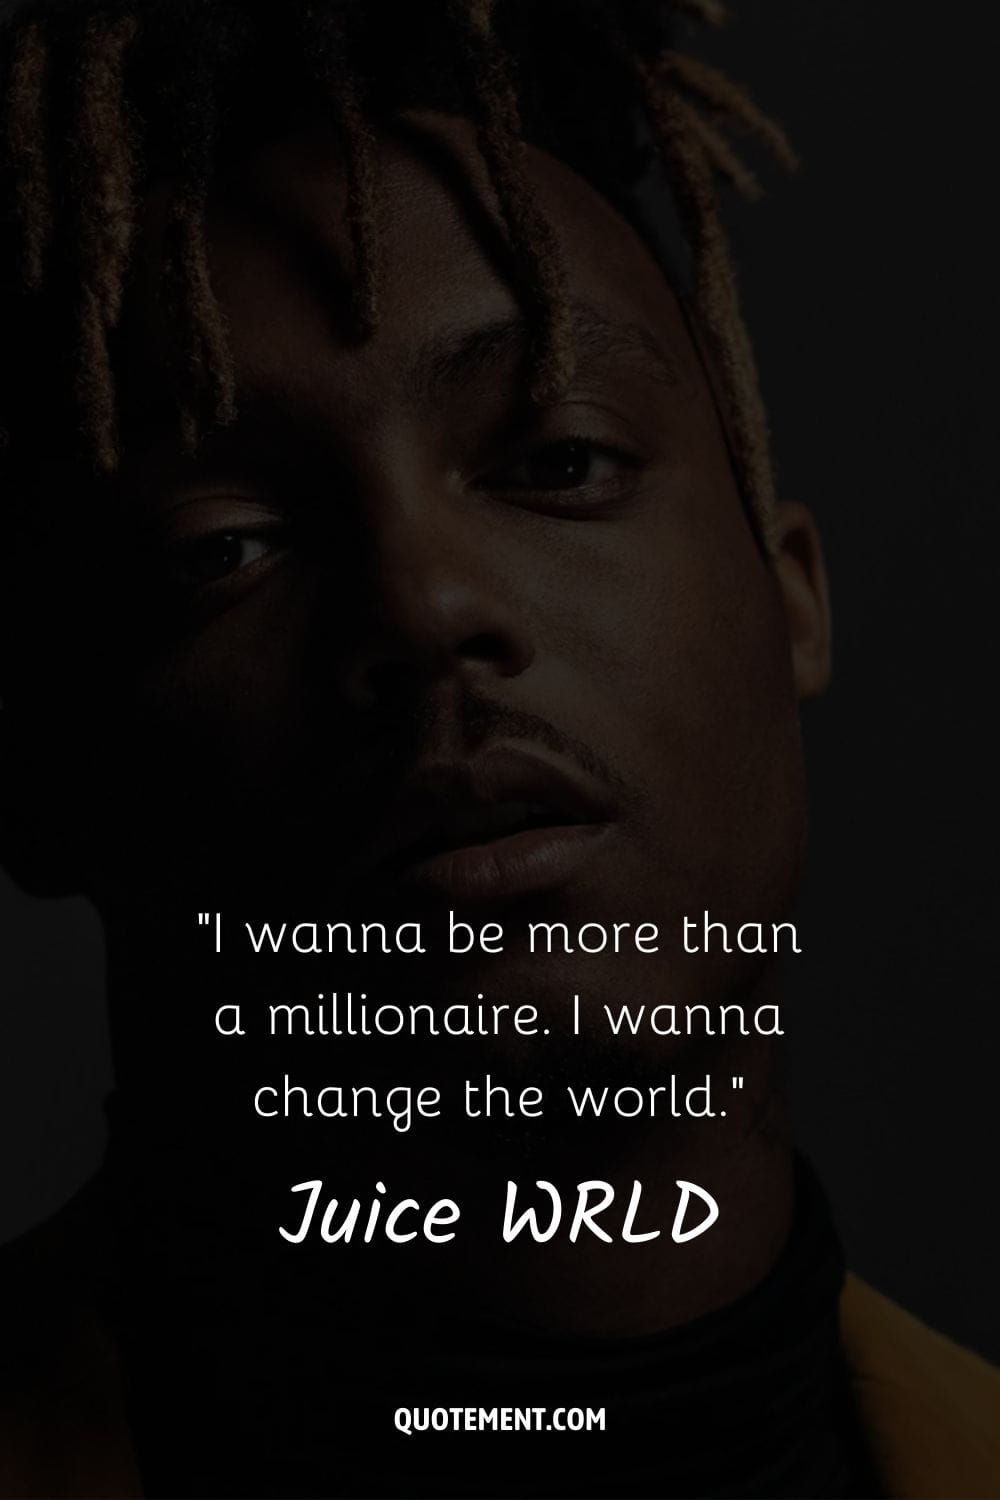 Quiero ser más que millonario. Quiero cambiar el mundo